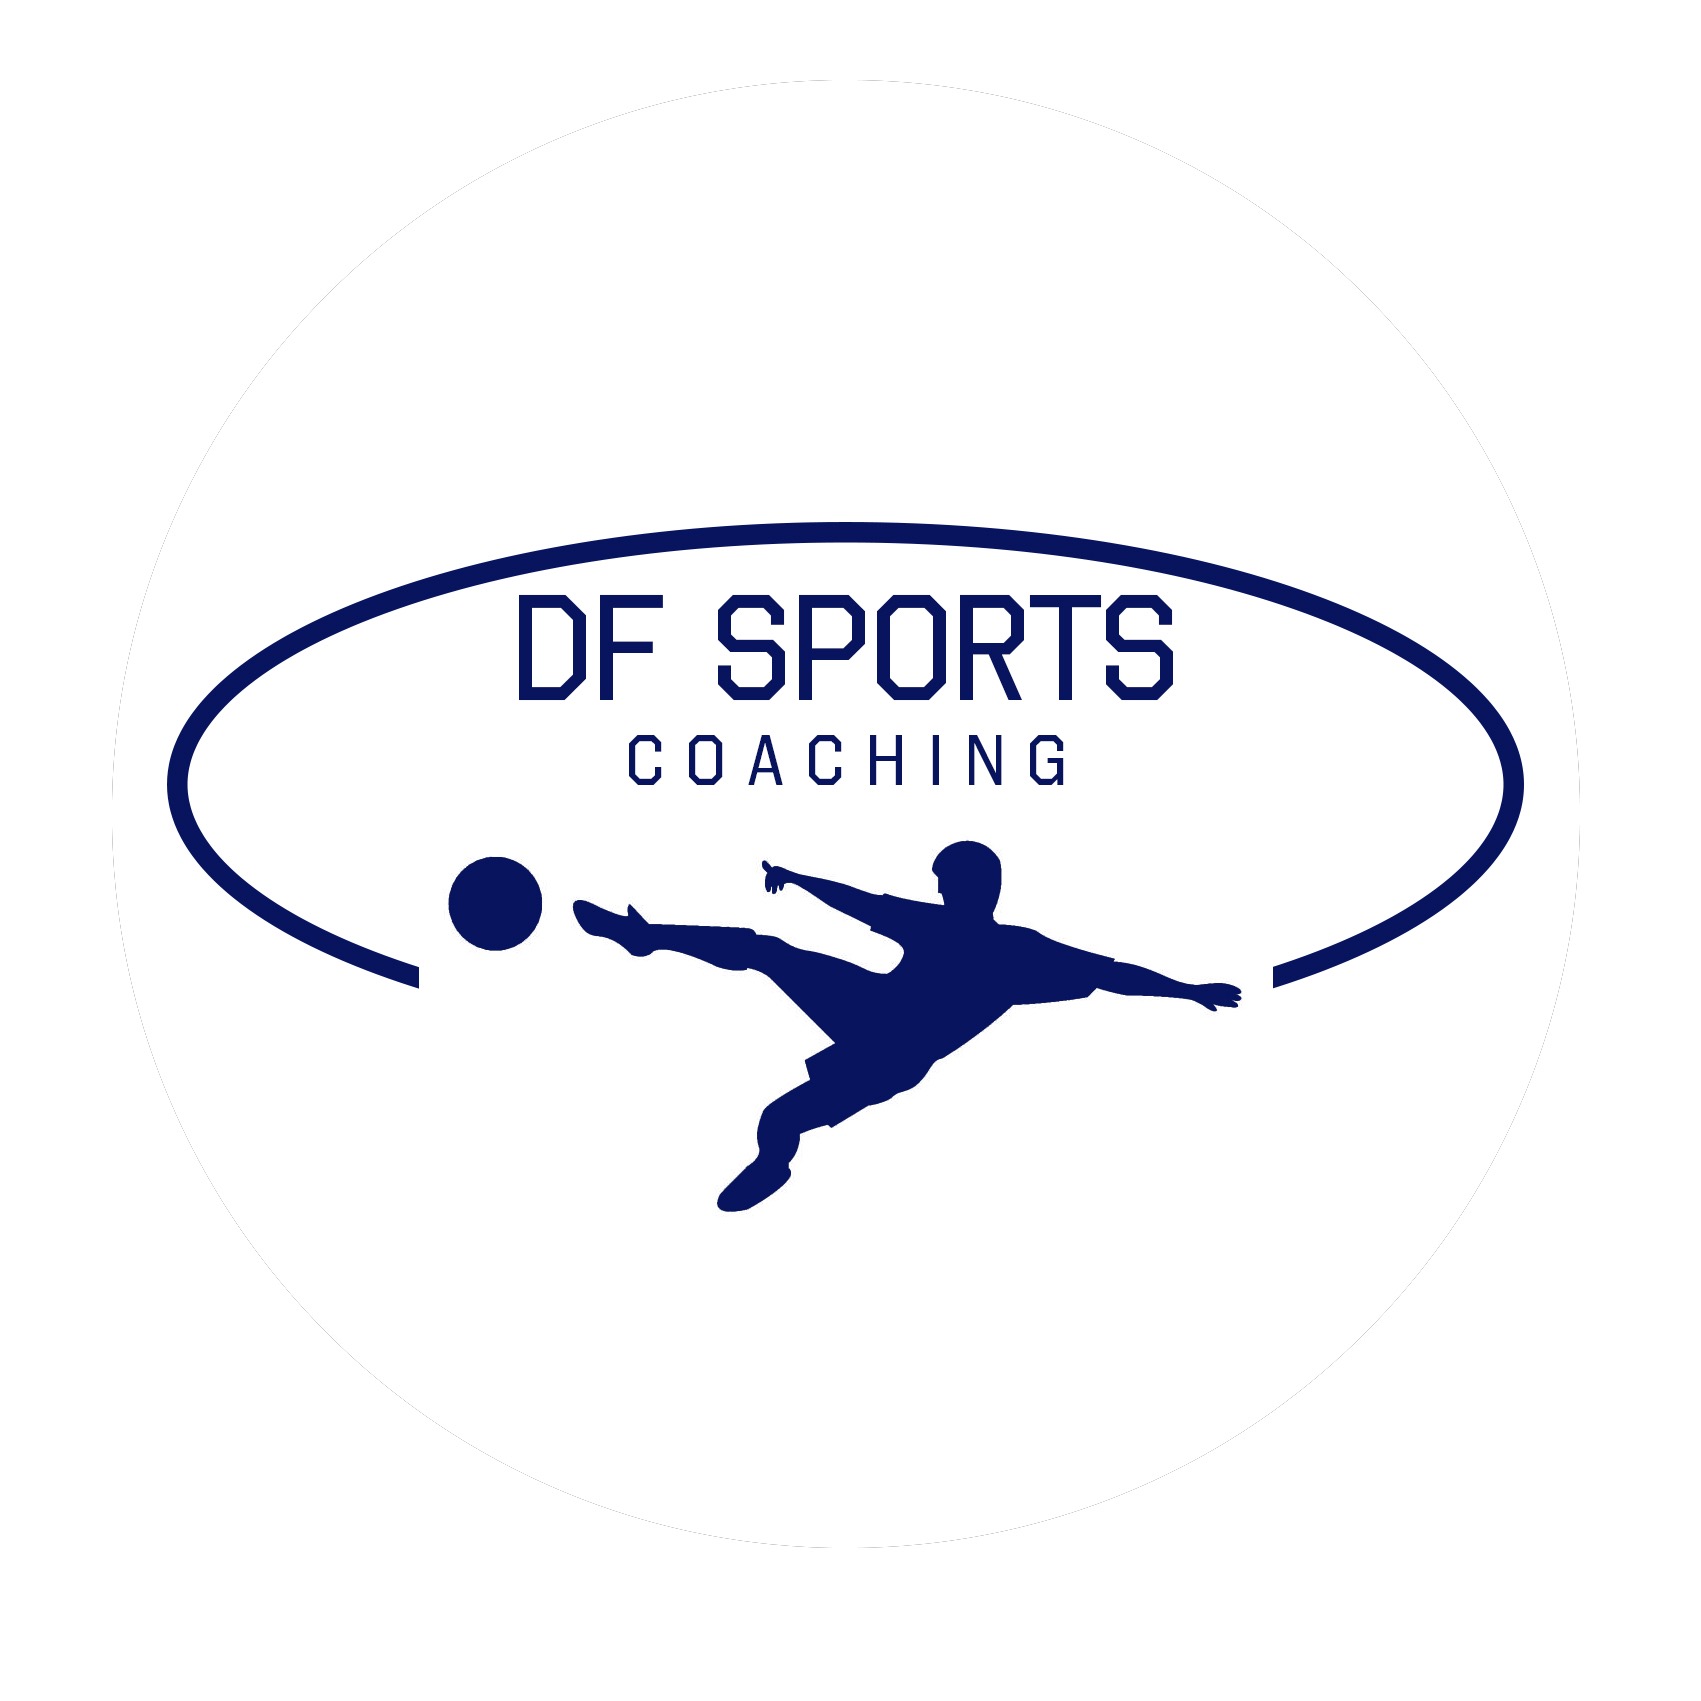 DF SPORTS COACHING's logo